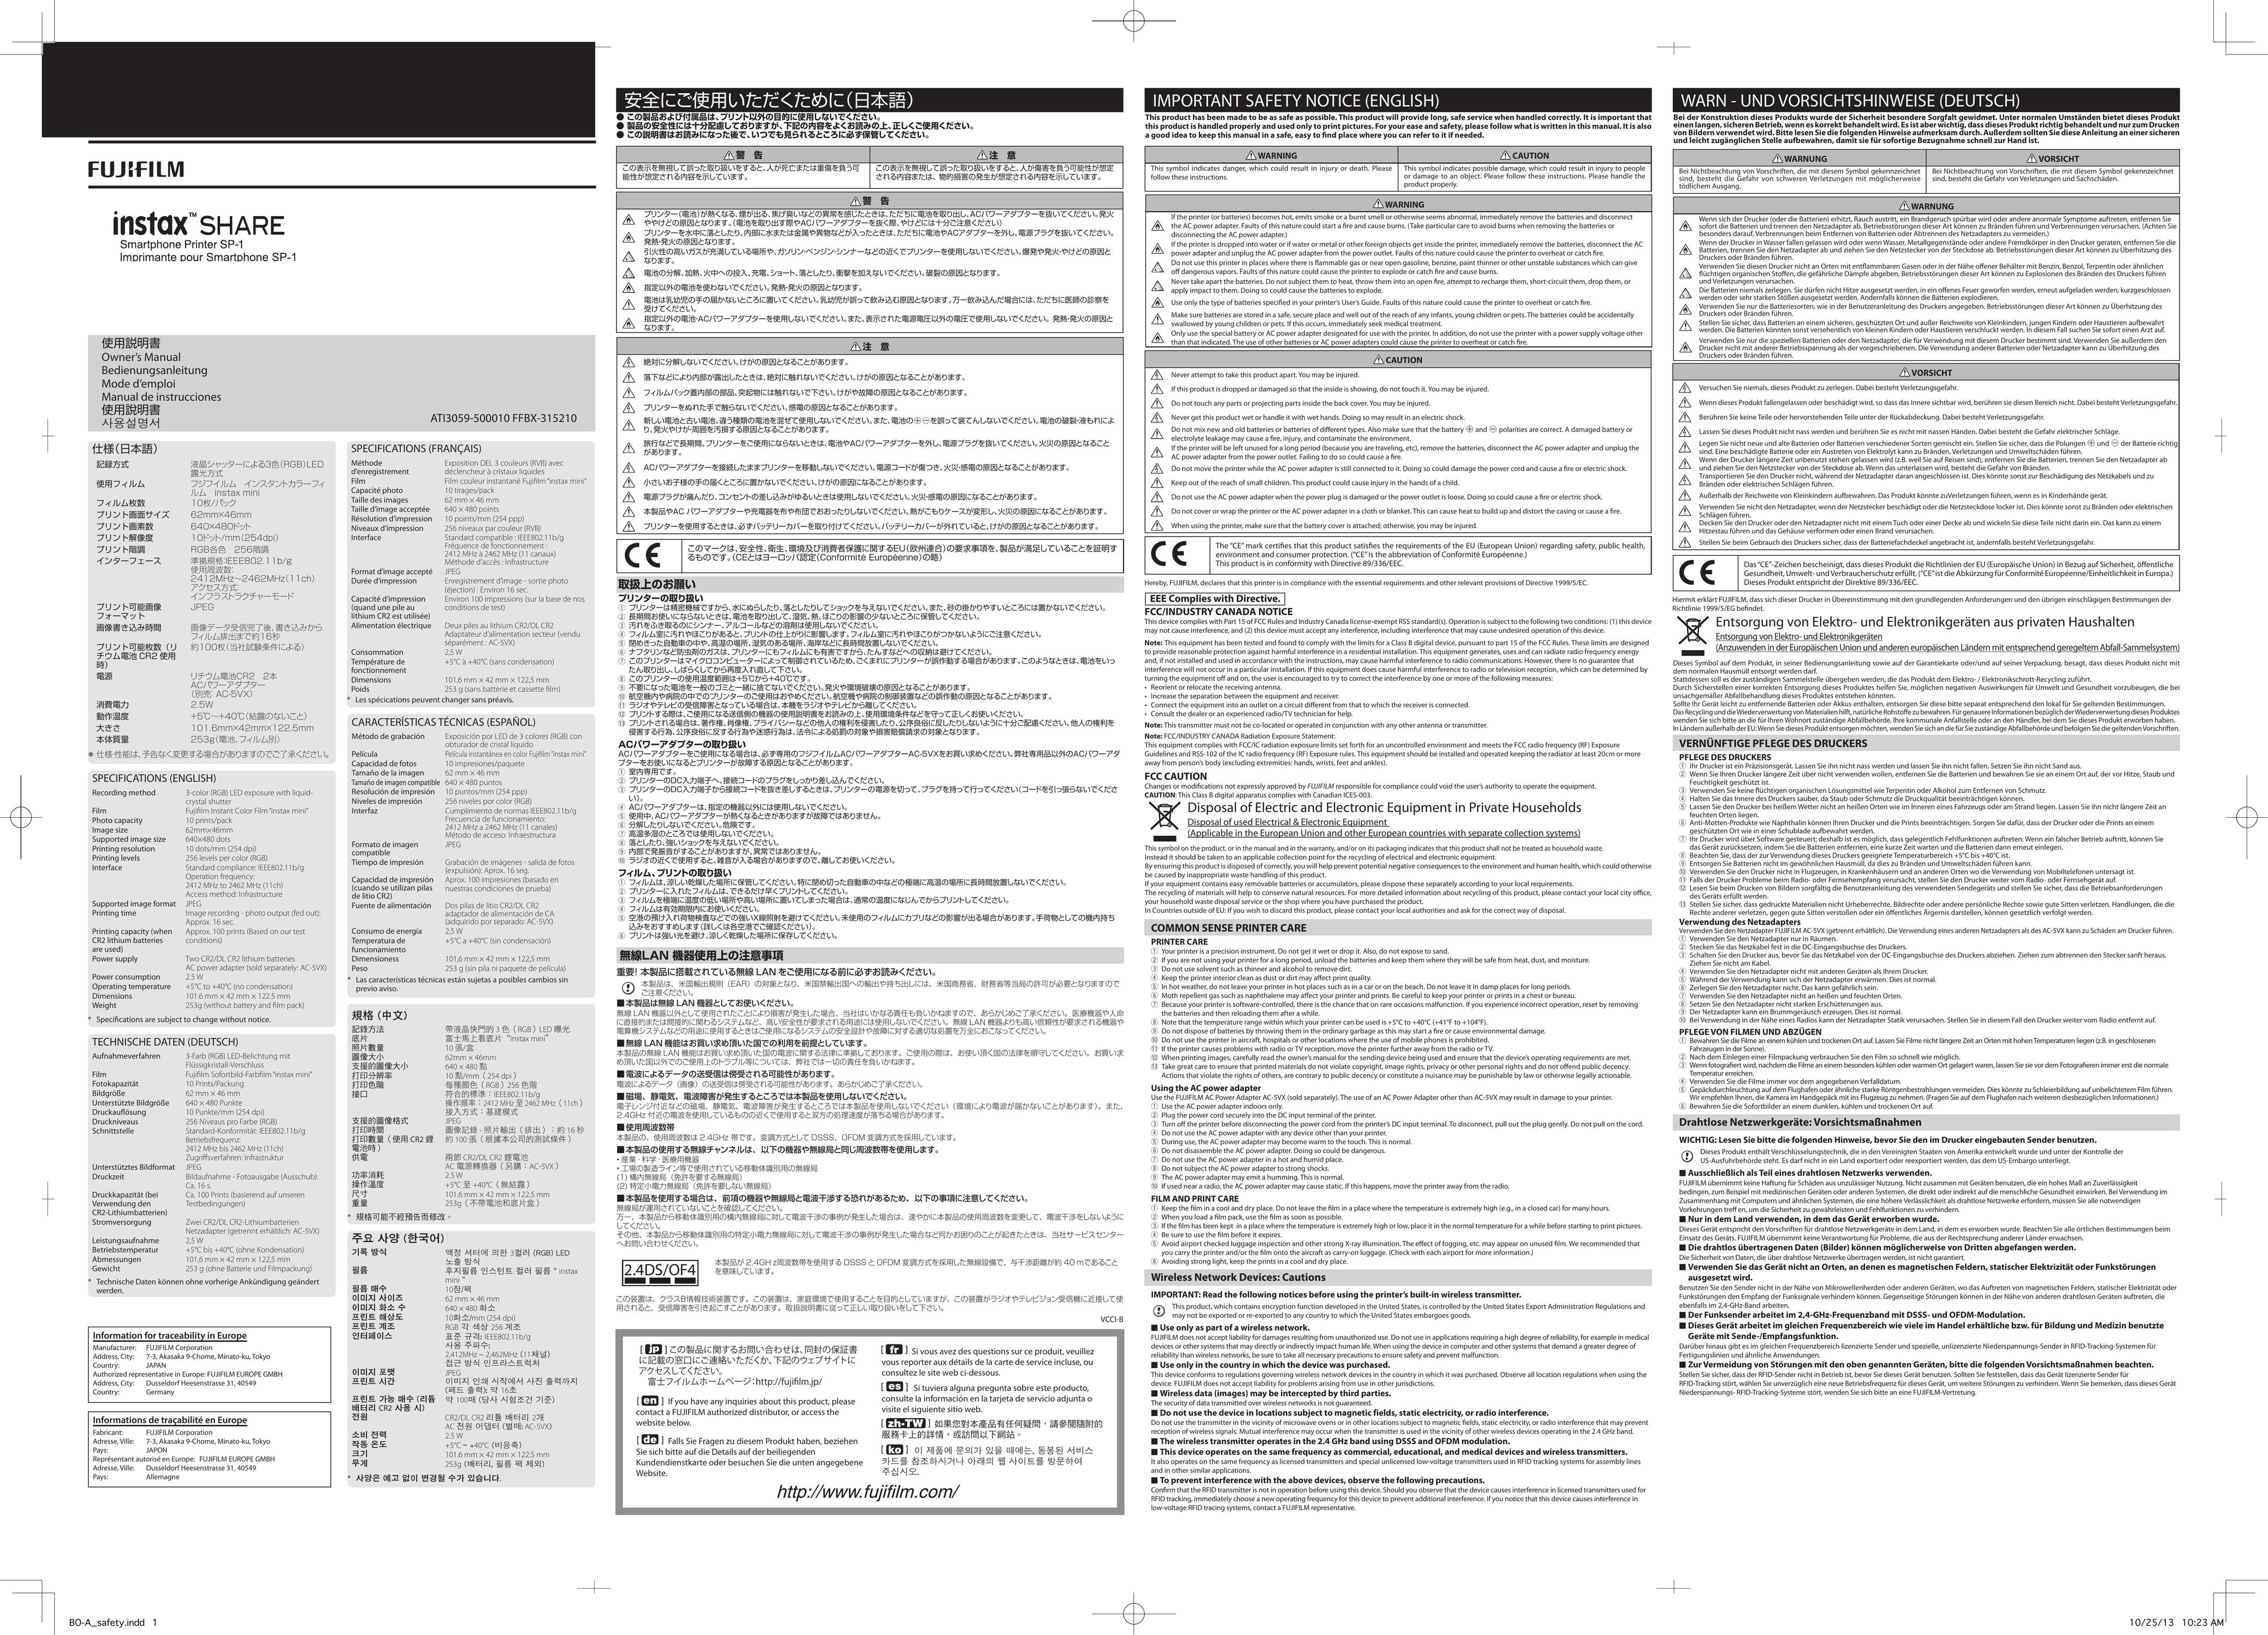 FujiFilm 7645 Printer User Manual